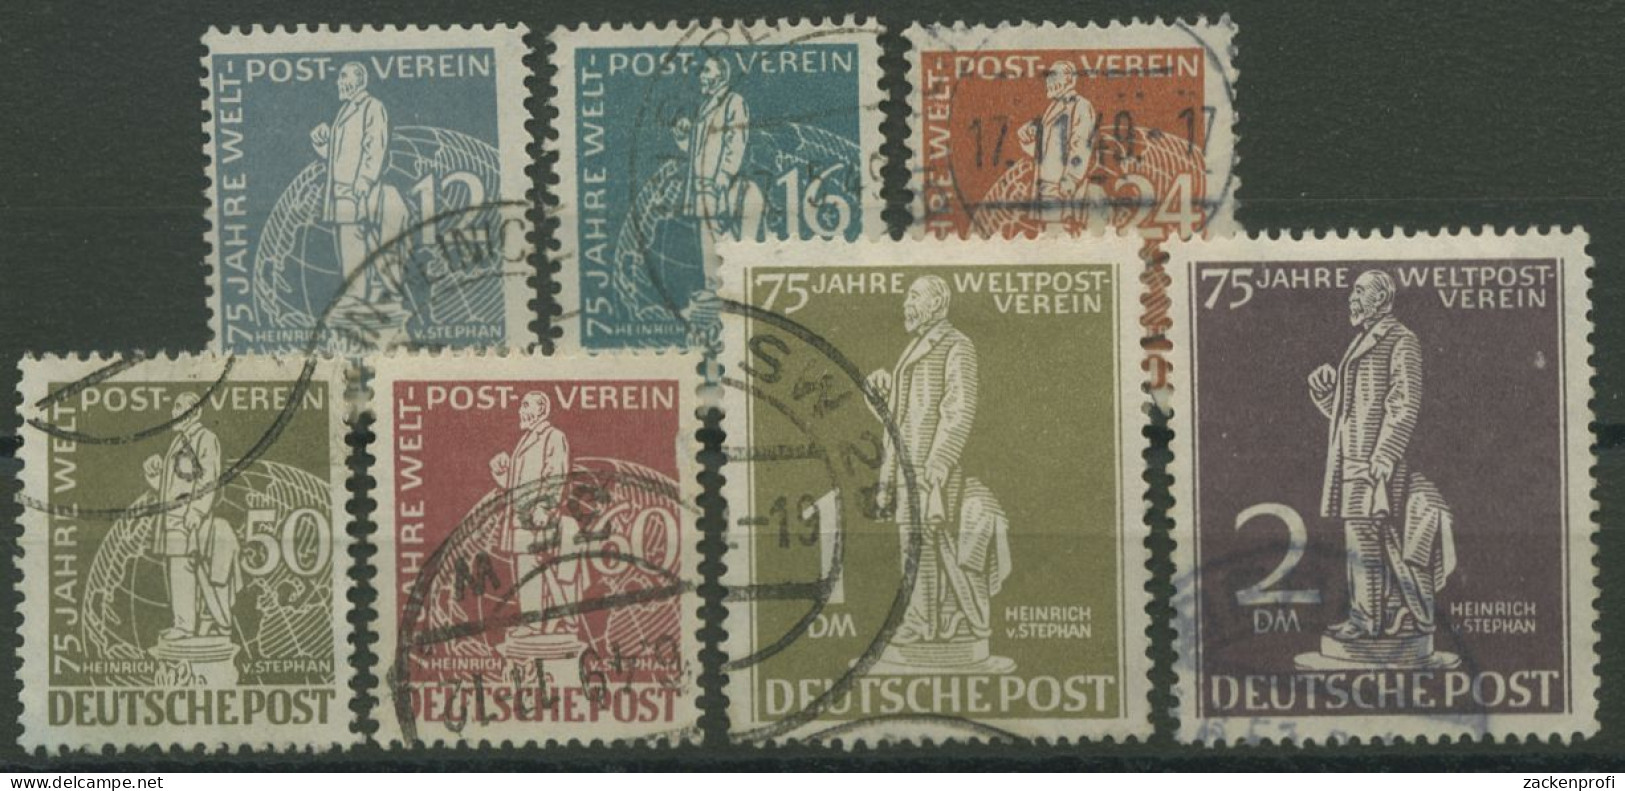 Berlin 1949 H. V. Stephan, Weltpostverein UPU 35/41 Gestempelt (R80797) - Usati